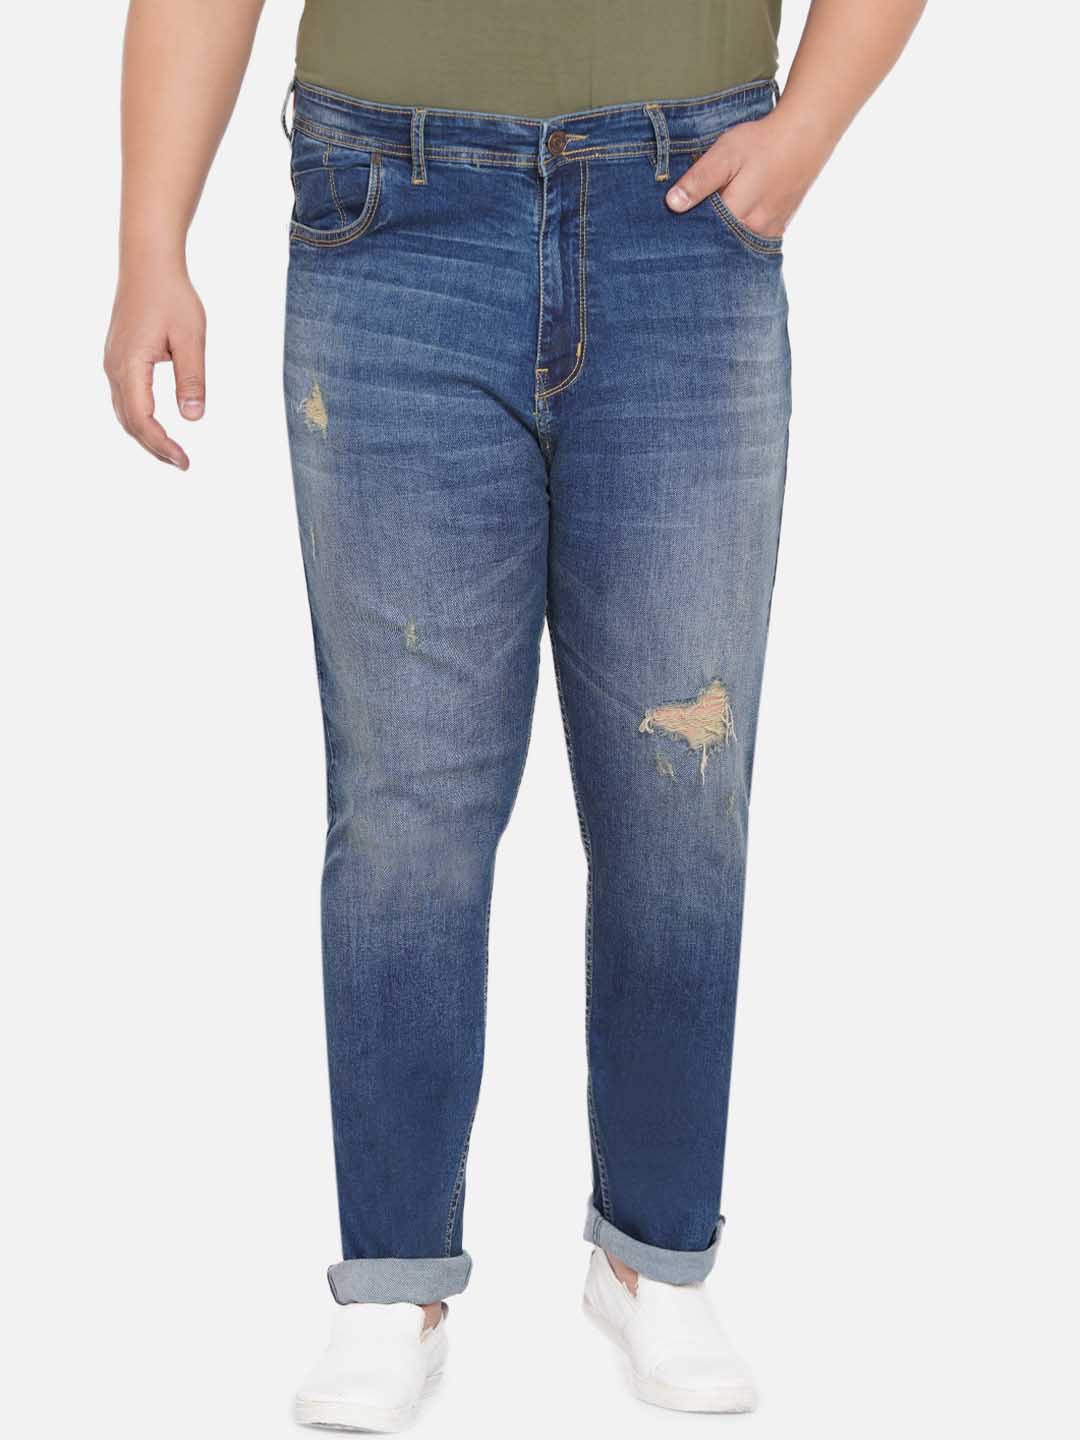 bottomwear/jeans/EJPJ25044/ejpj25044-2.jpg